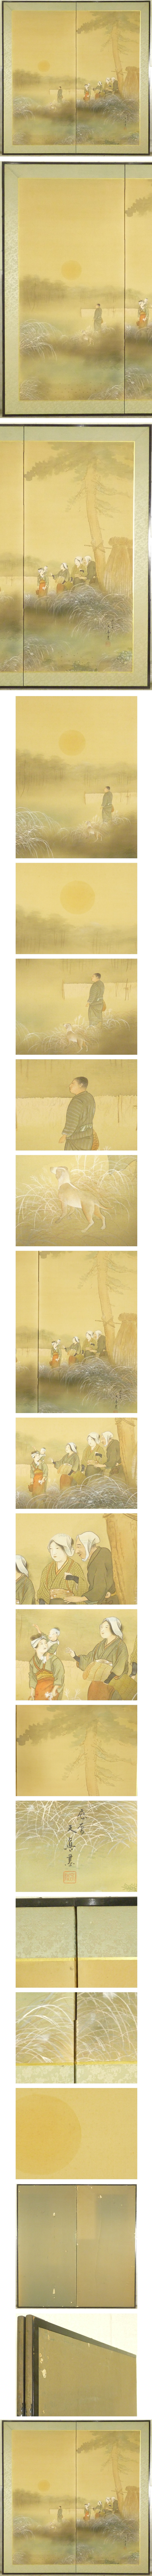 【即納在庫】天眞 銘 人物図 二枚折 屏風 高さ 約173cm 二枚折半双 紙本肉筆 日本画 人物、菩薩